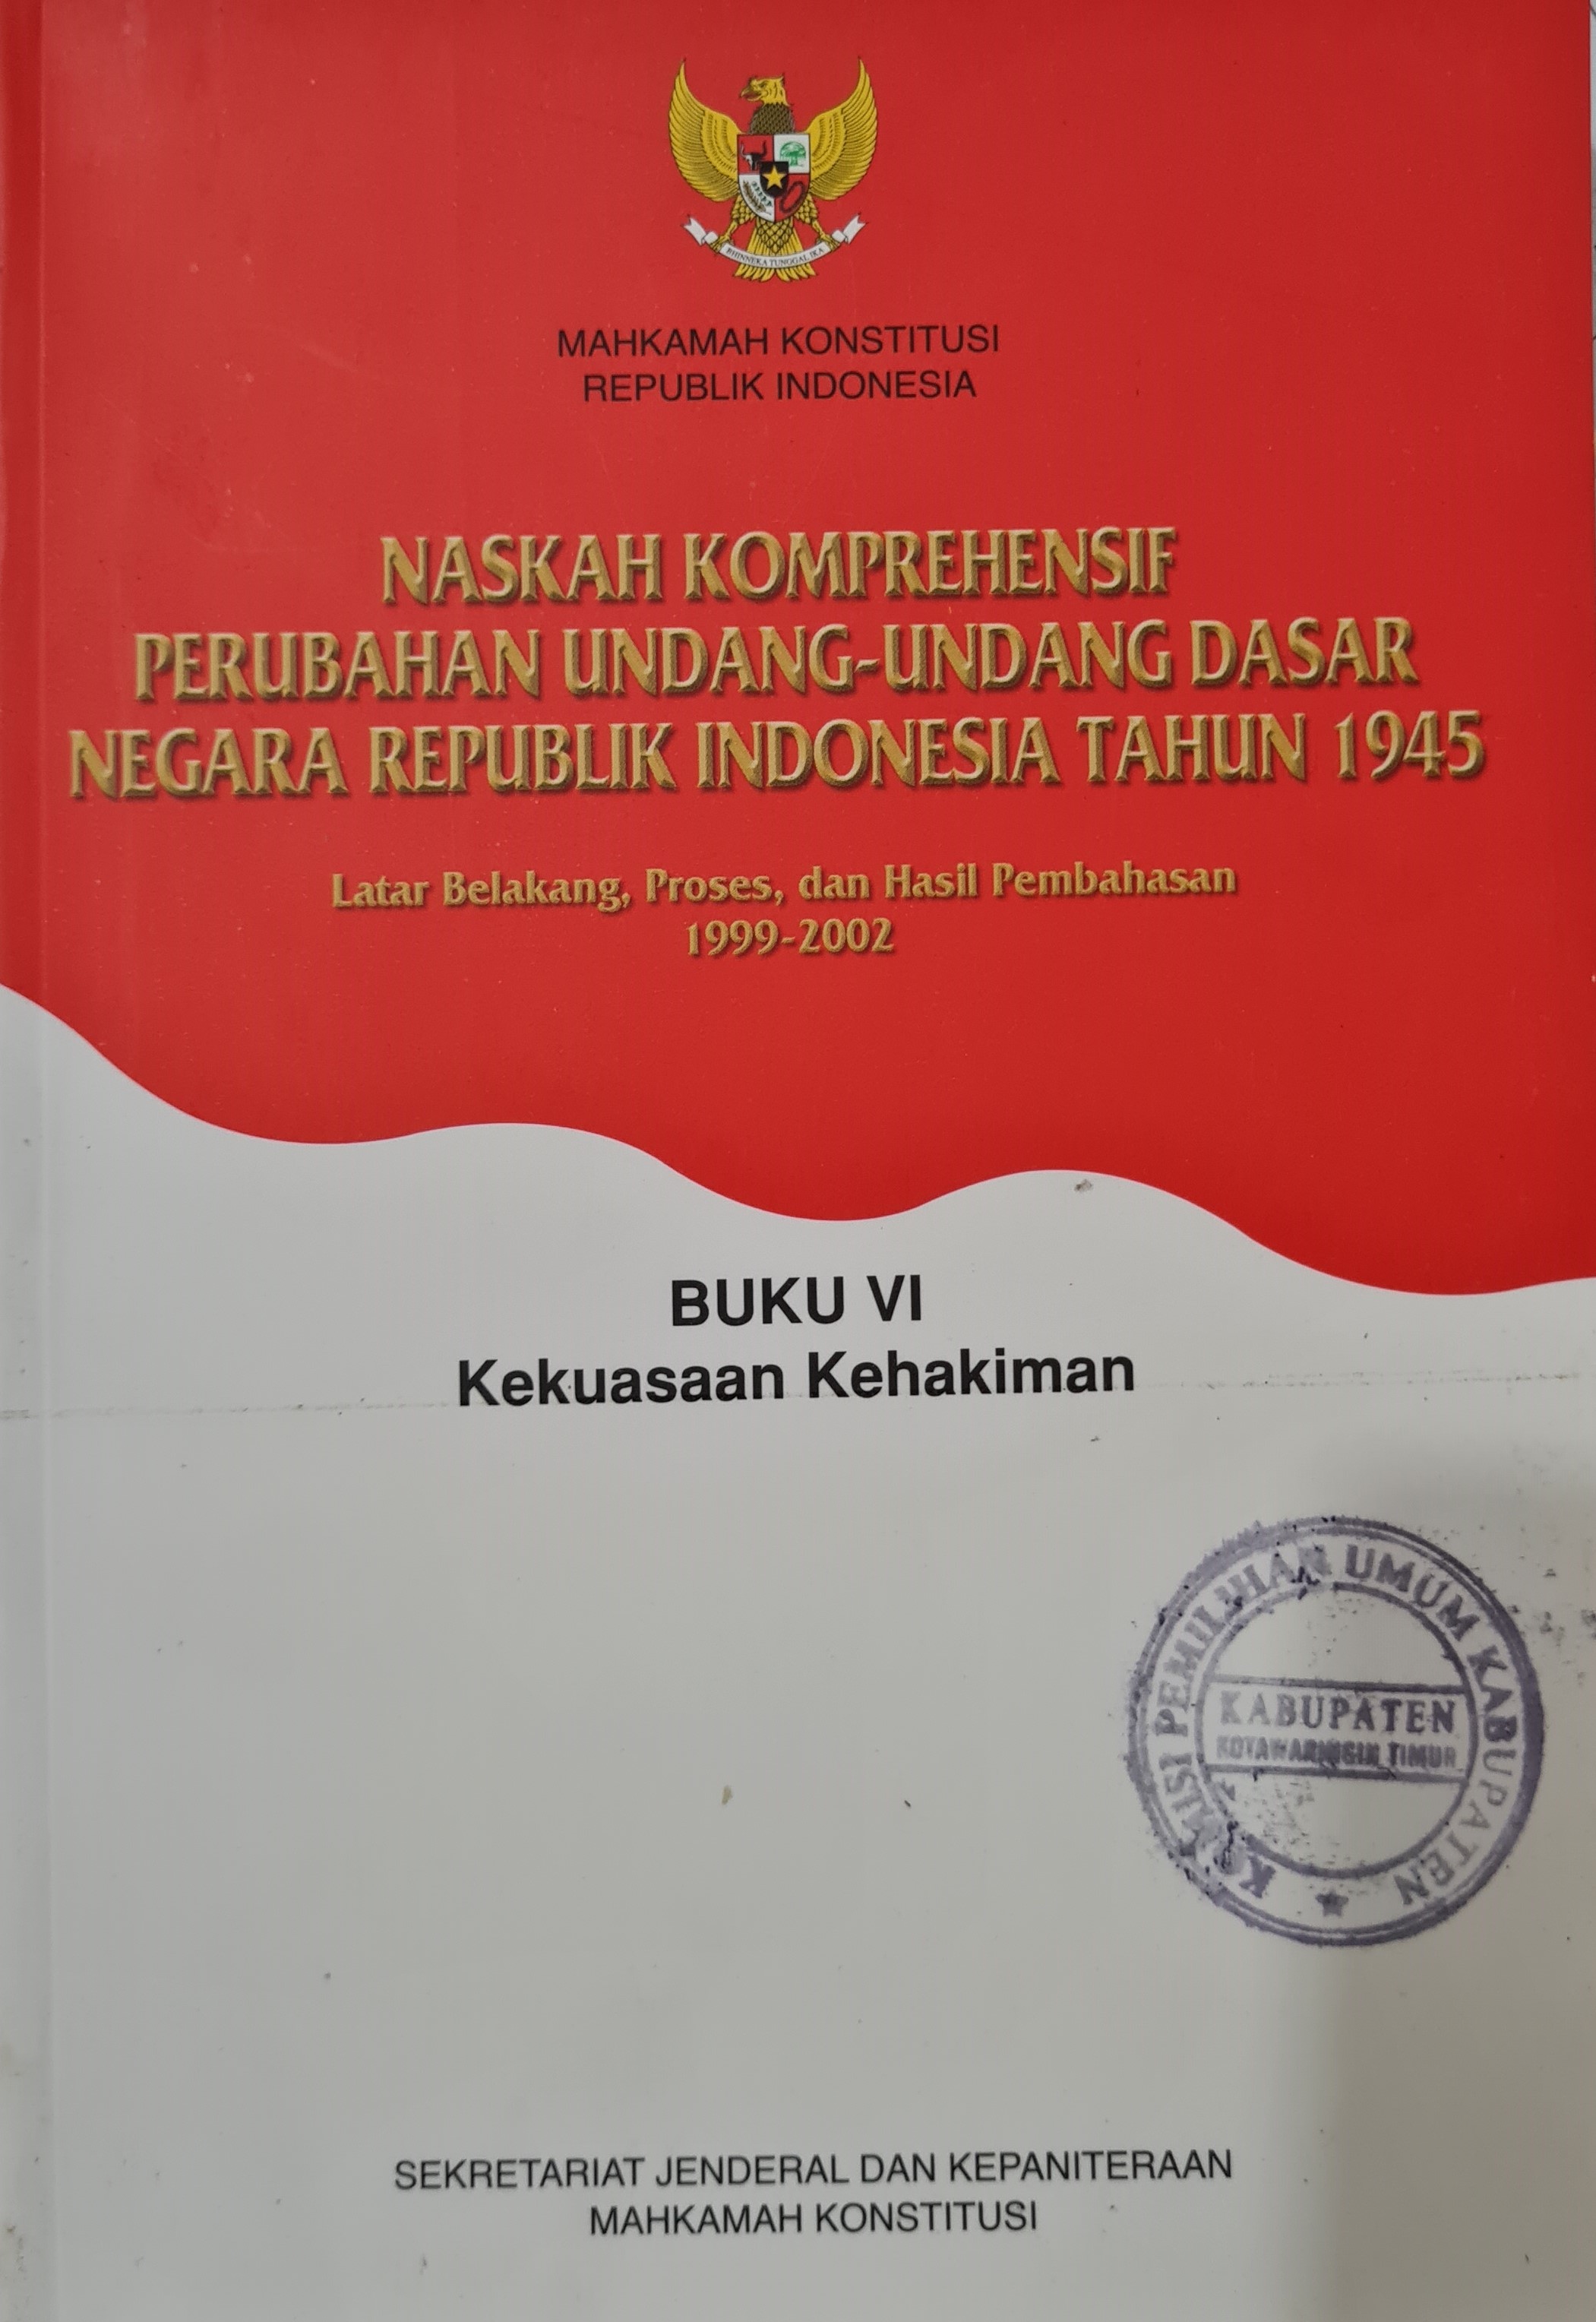 Naskah Komprehensif Perubahan Undang-Undang Dasar Negara Republik Indonesia Tahun 1945 Buku VI Kekuasaan Kehakiman